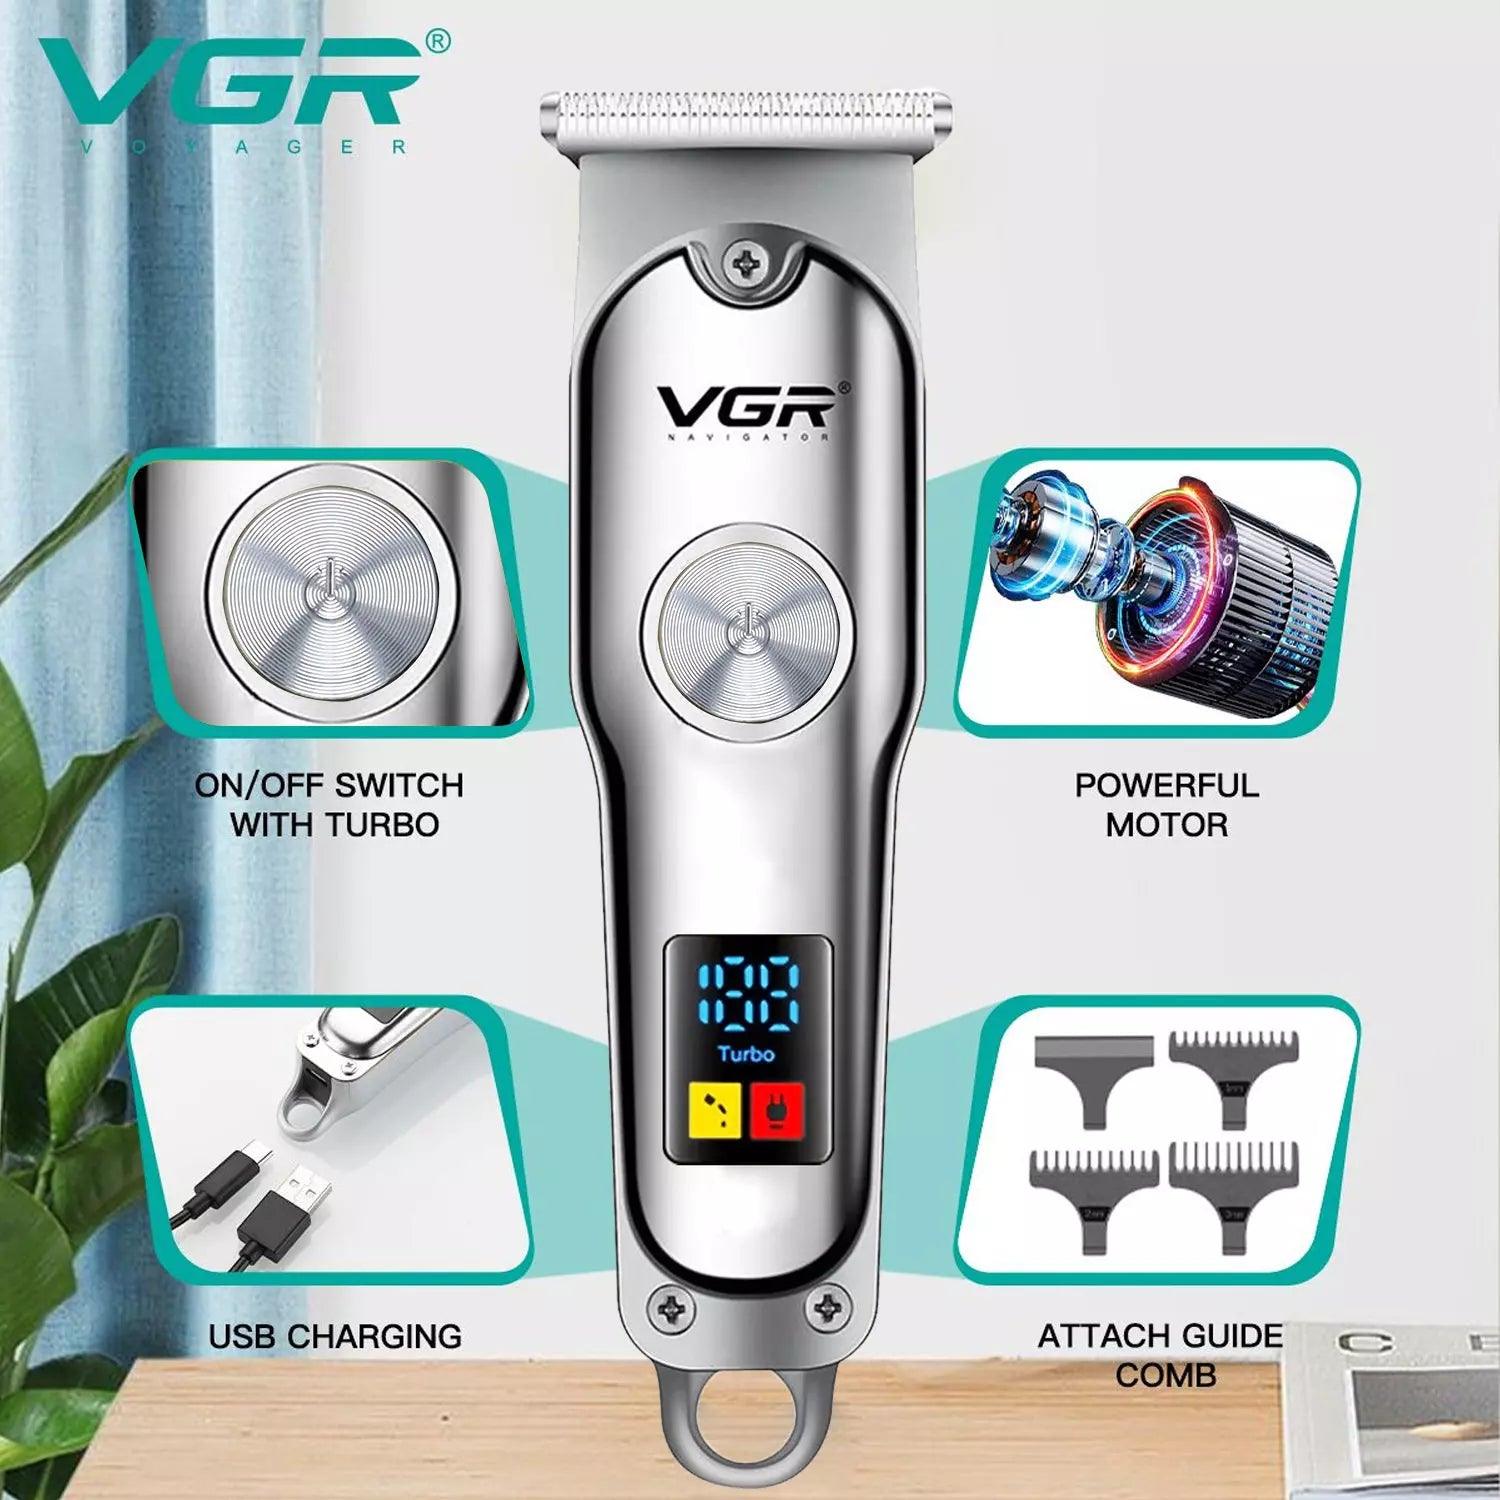 VGR V-290 Hair Trimmer For Men